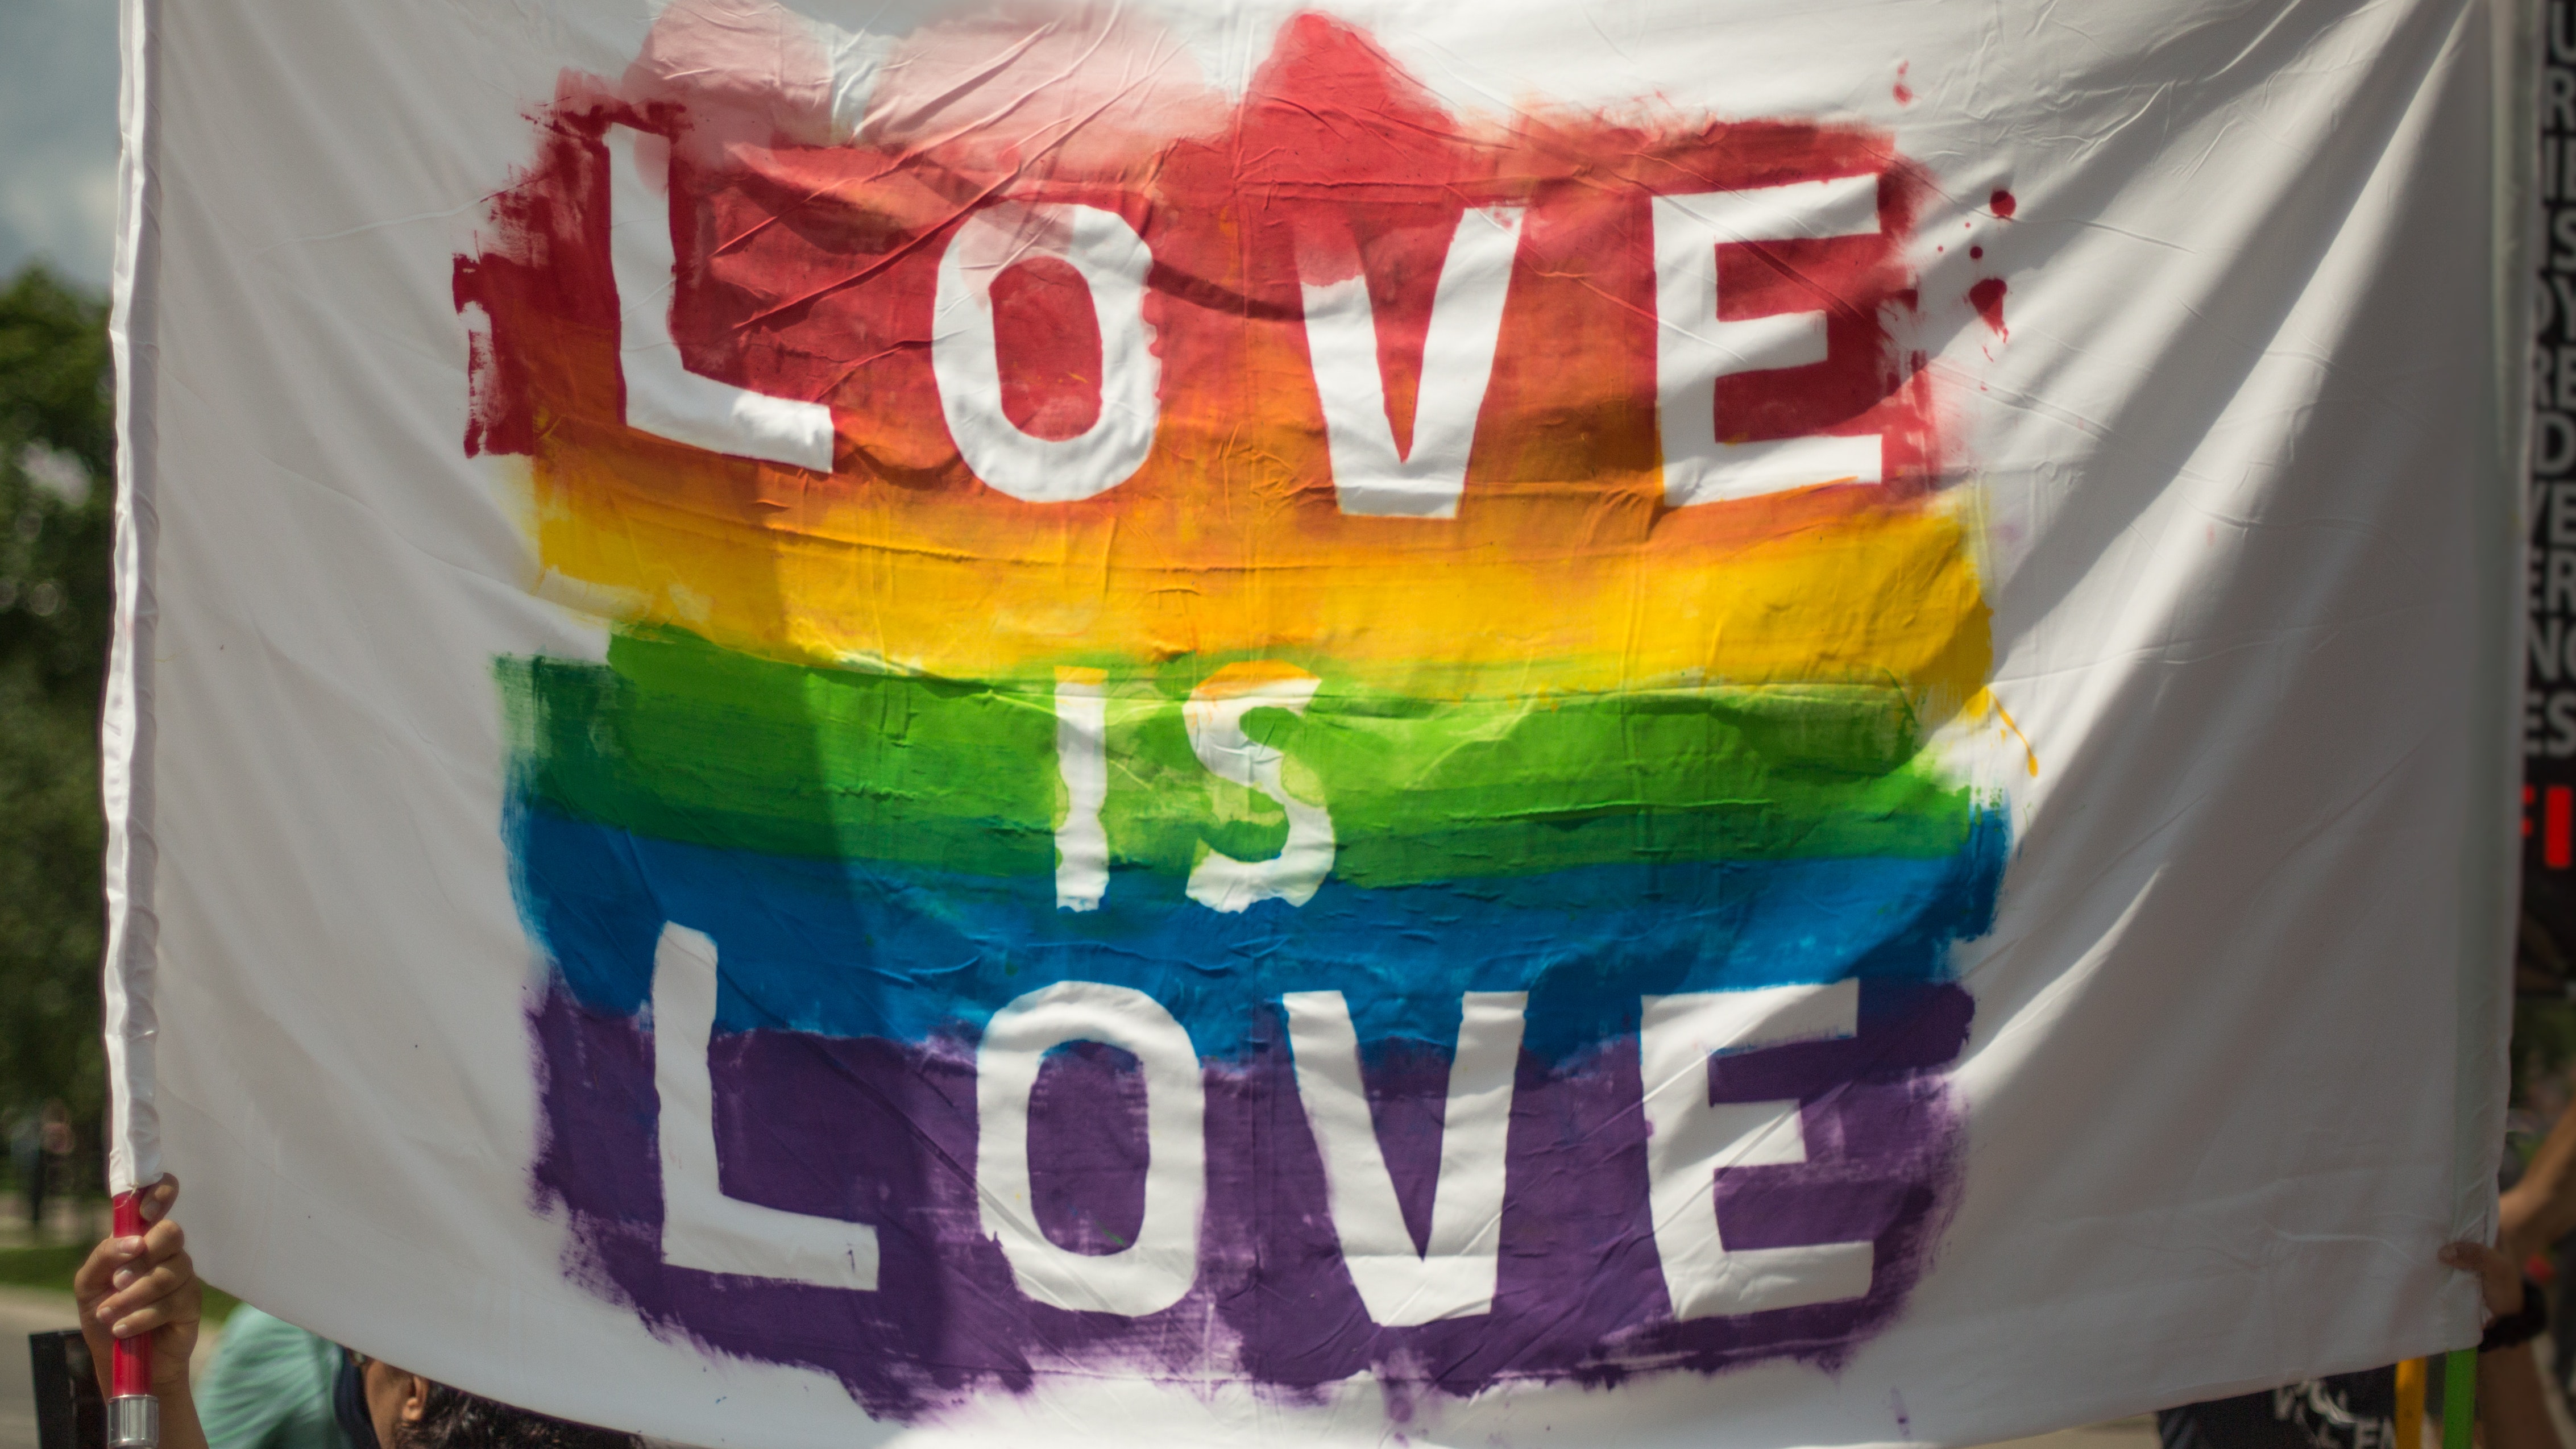 Γκάνα: Ψηφίστηκε ομόφωνα ακραίο νομοσχέδιο κατά της ΛΟΑΤΚΙ+ κοινότητας – «Η ομοφυλοφιλία δεν αποτελεί ανθρώπινο δικαίωμα»